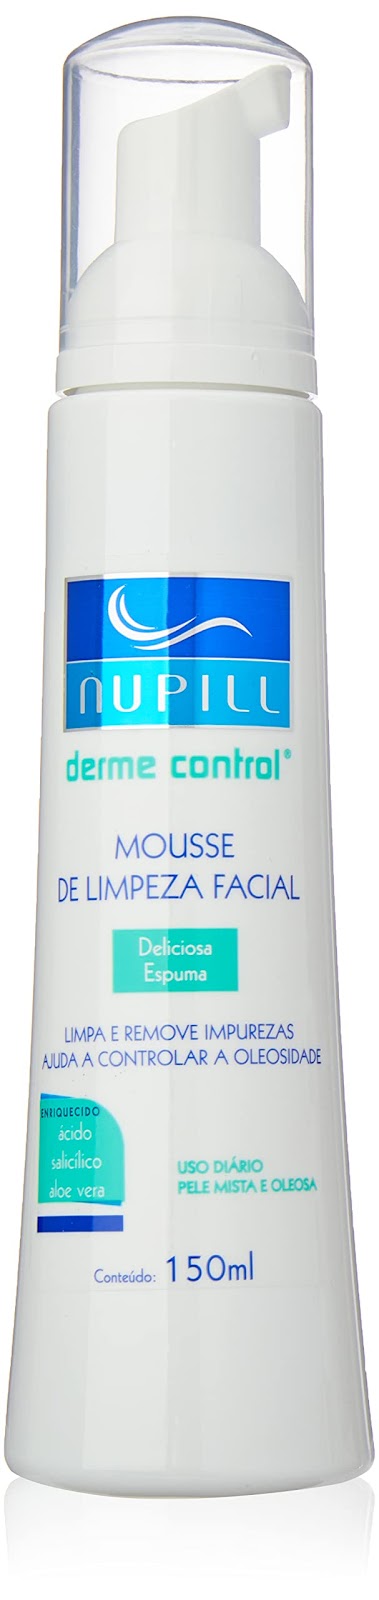 Mousse de Limpeza Facial Derme Control Nupill 150ml